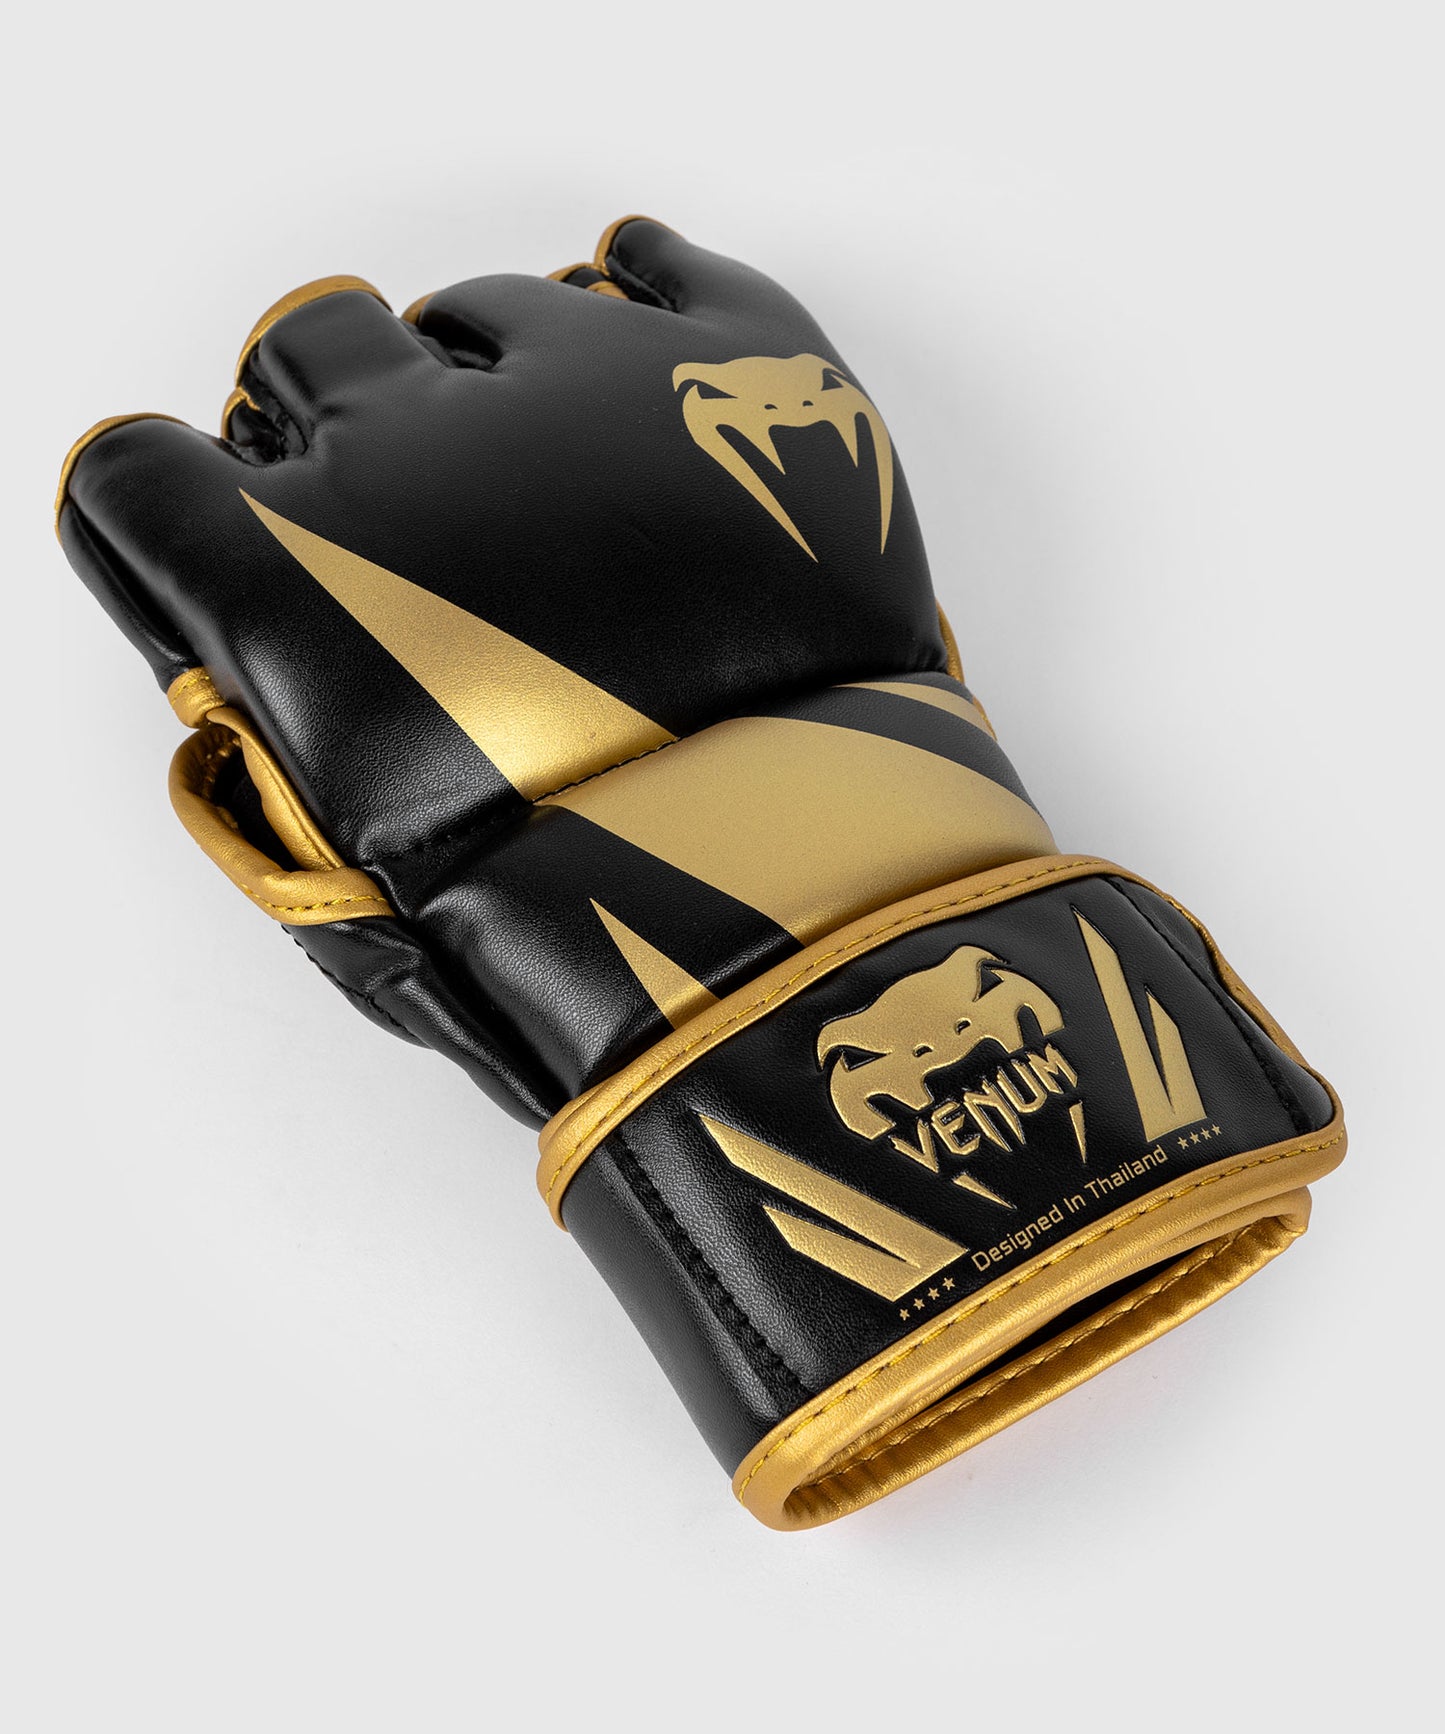 Venum Challenger 2.0 MMA-Handschuhe - Schwarz/Gold